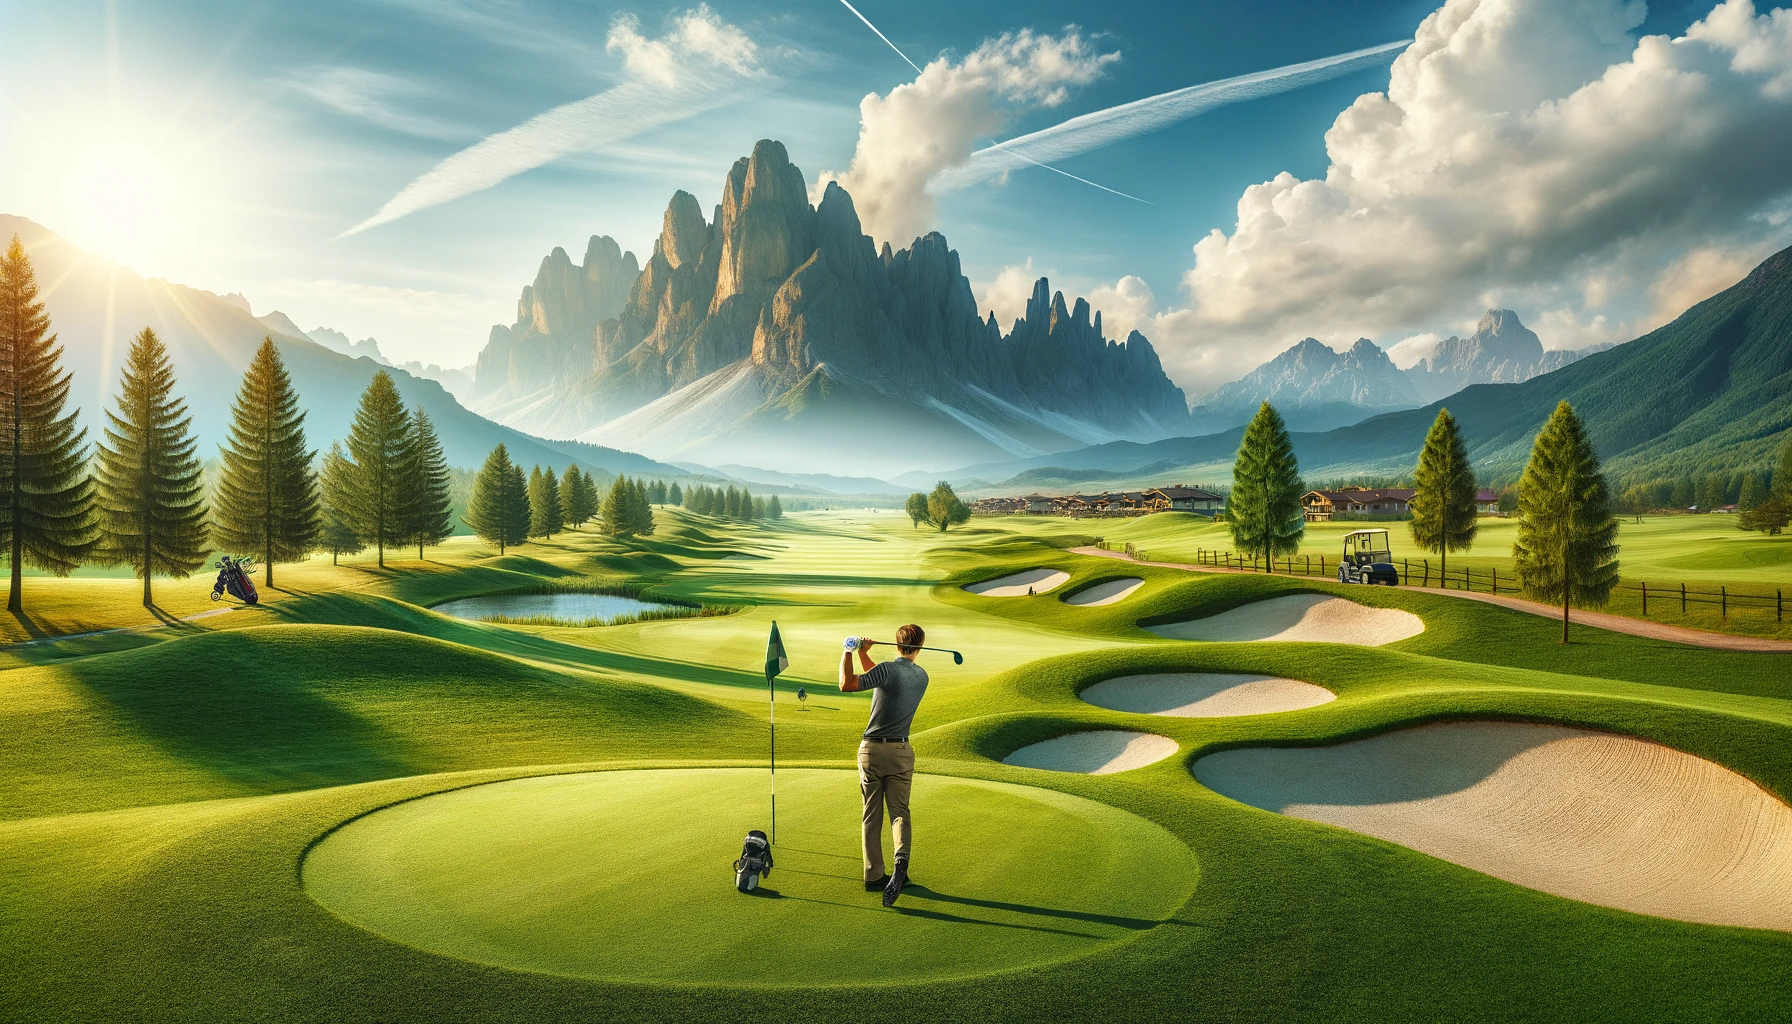 골프 여행의 묘미: 세계 명소 코스와 풍경의 아름다움